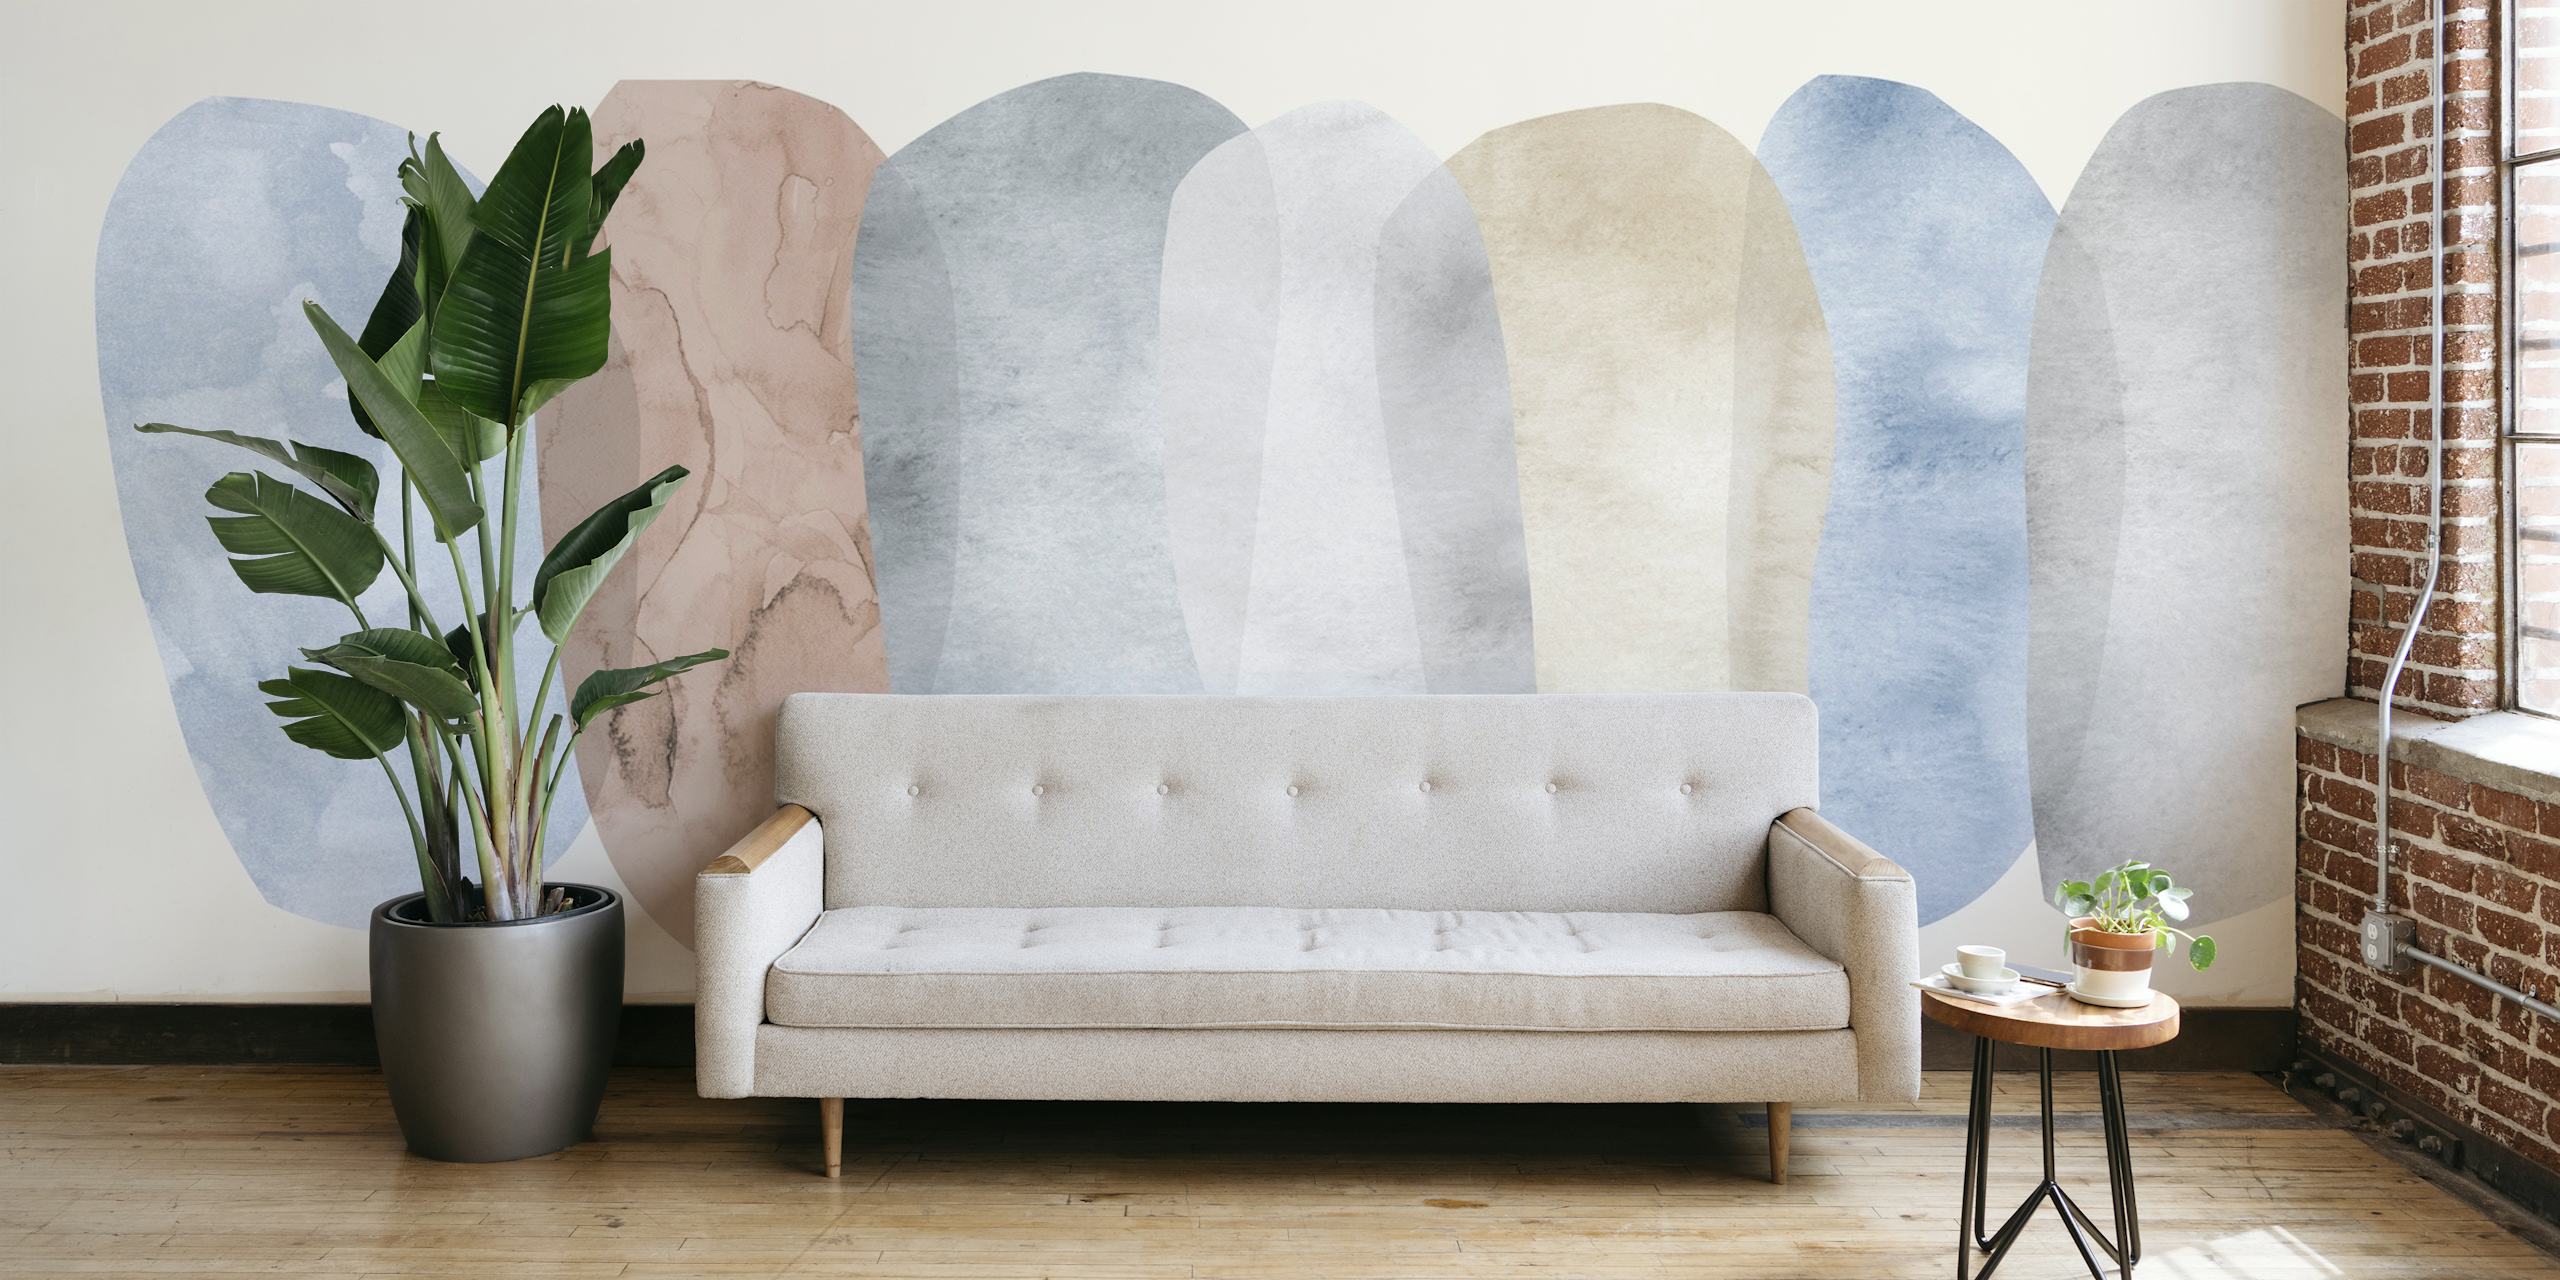 Pastell abstrakt collage tapet med lugnande blå och neutrala toner